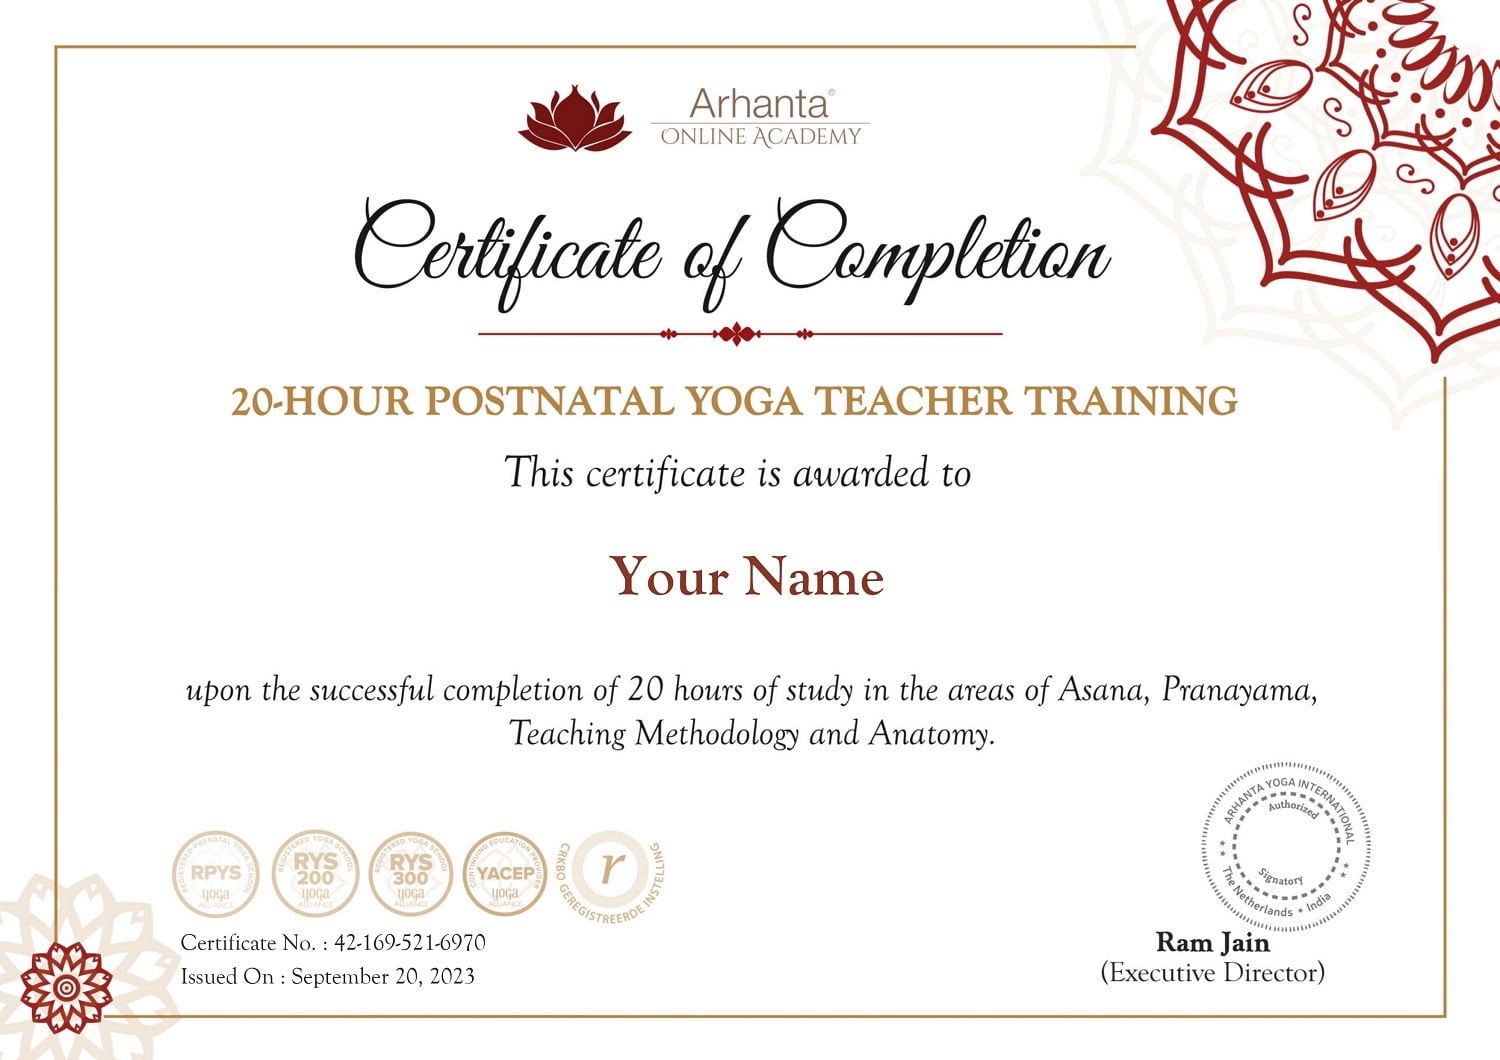 20 Hour online Postnatal Yoga Teacher Training Certificate